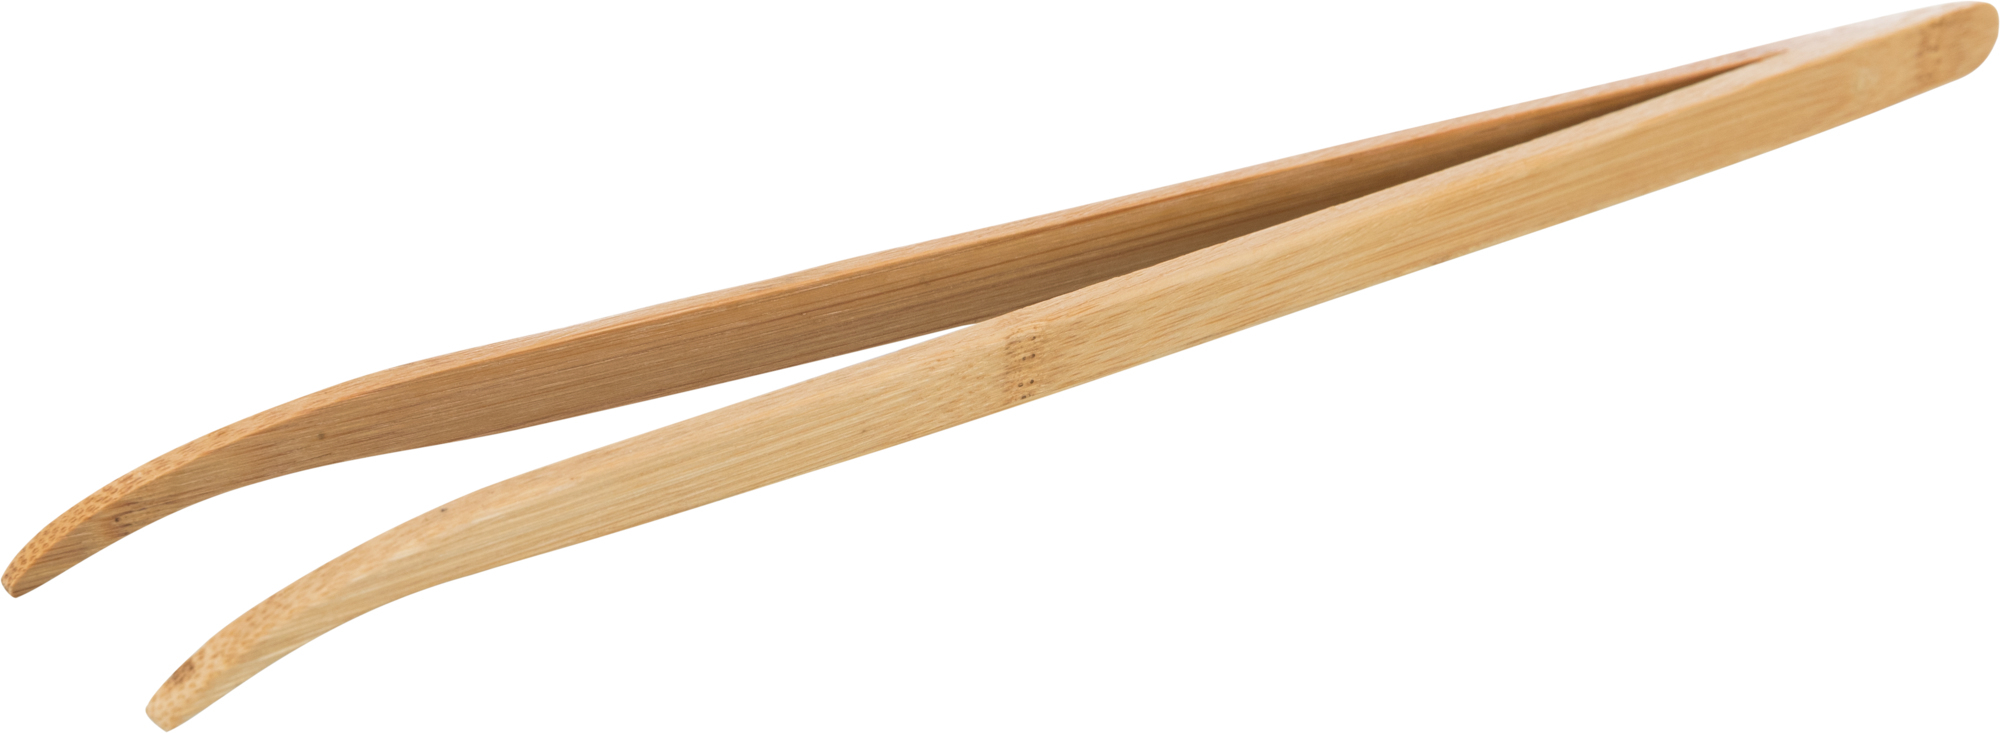 Pinça em bambu curvada para alimentos Reptiland